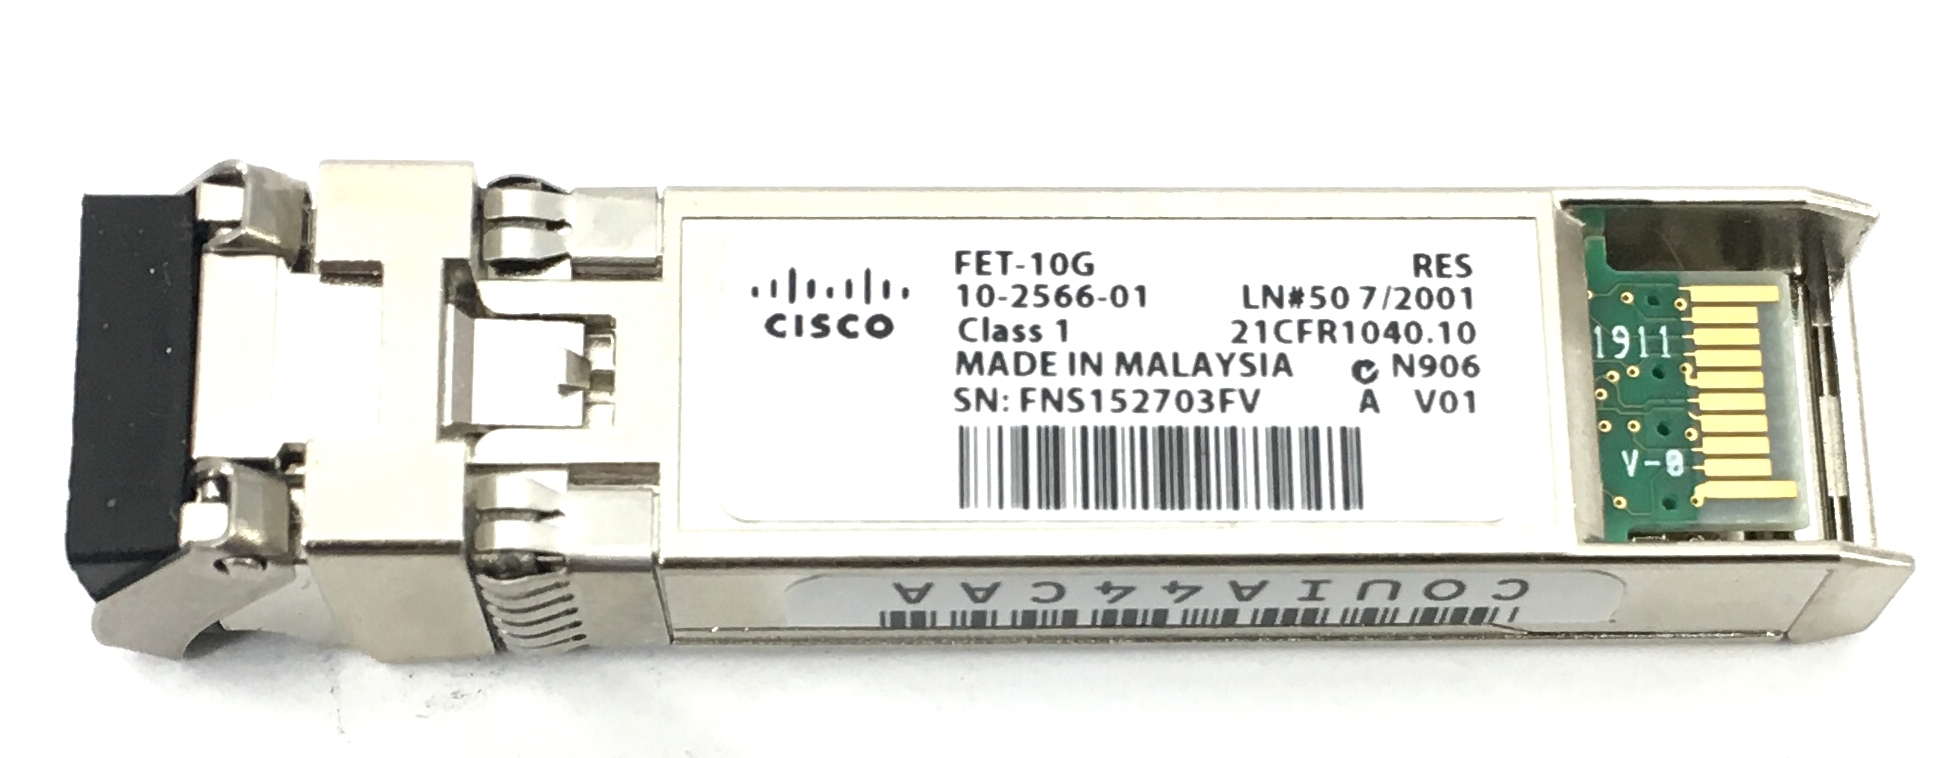 CISCO FET-10G 10GBE FABRIC EXTENDER TRANSCEIVER (10-2566-01)